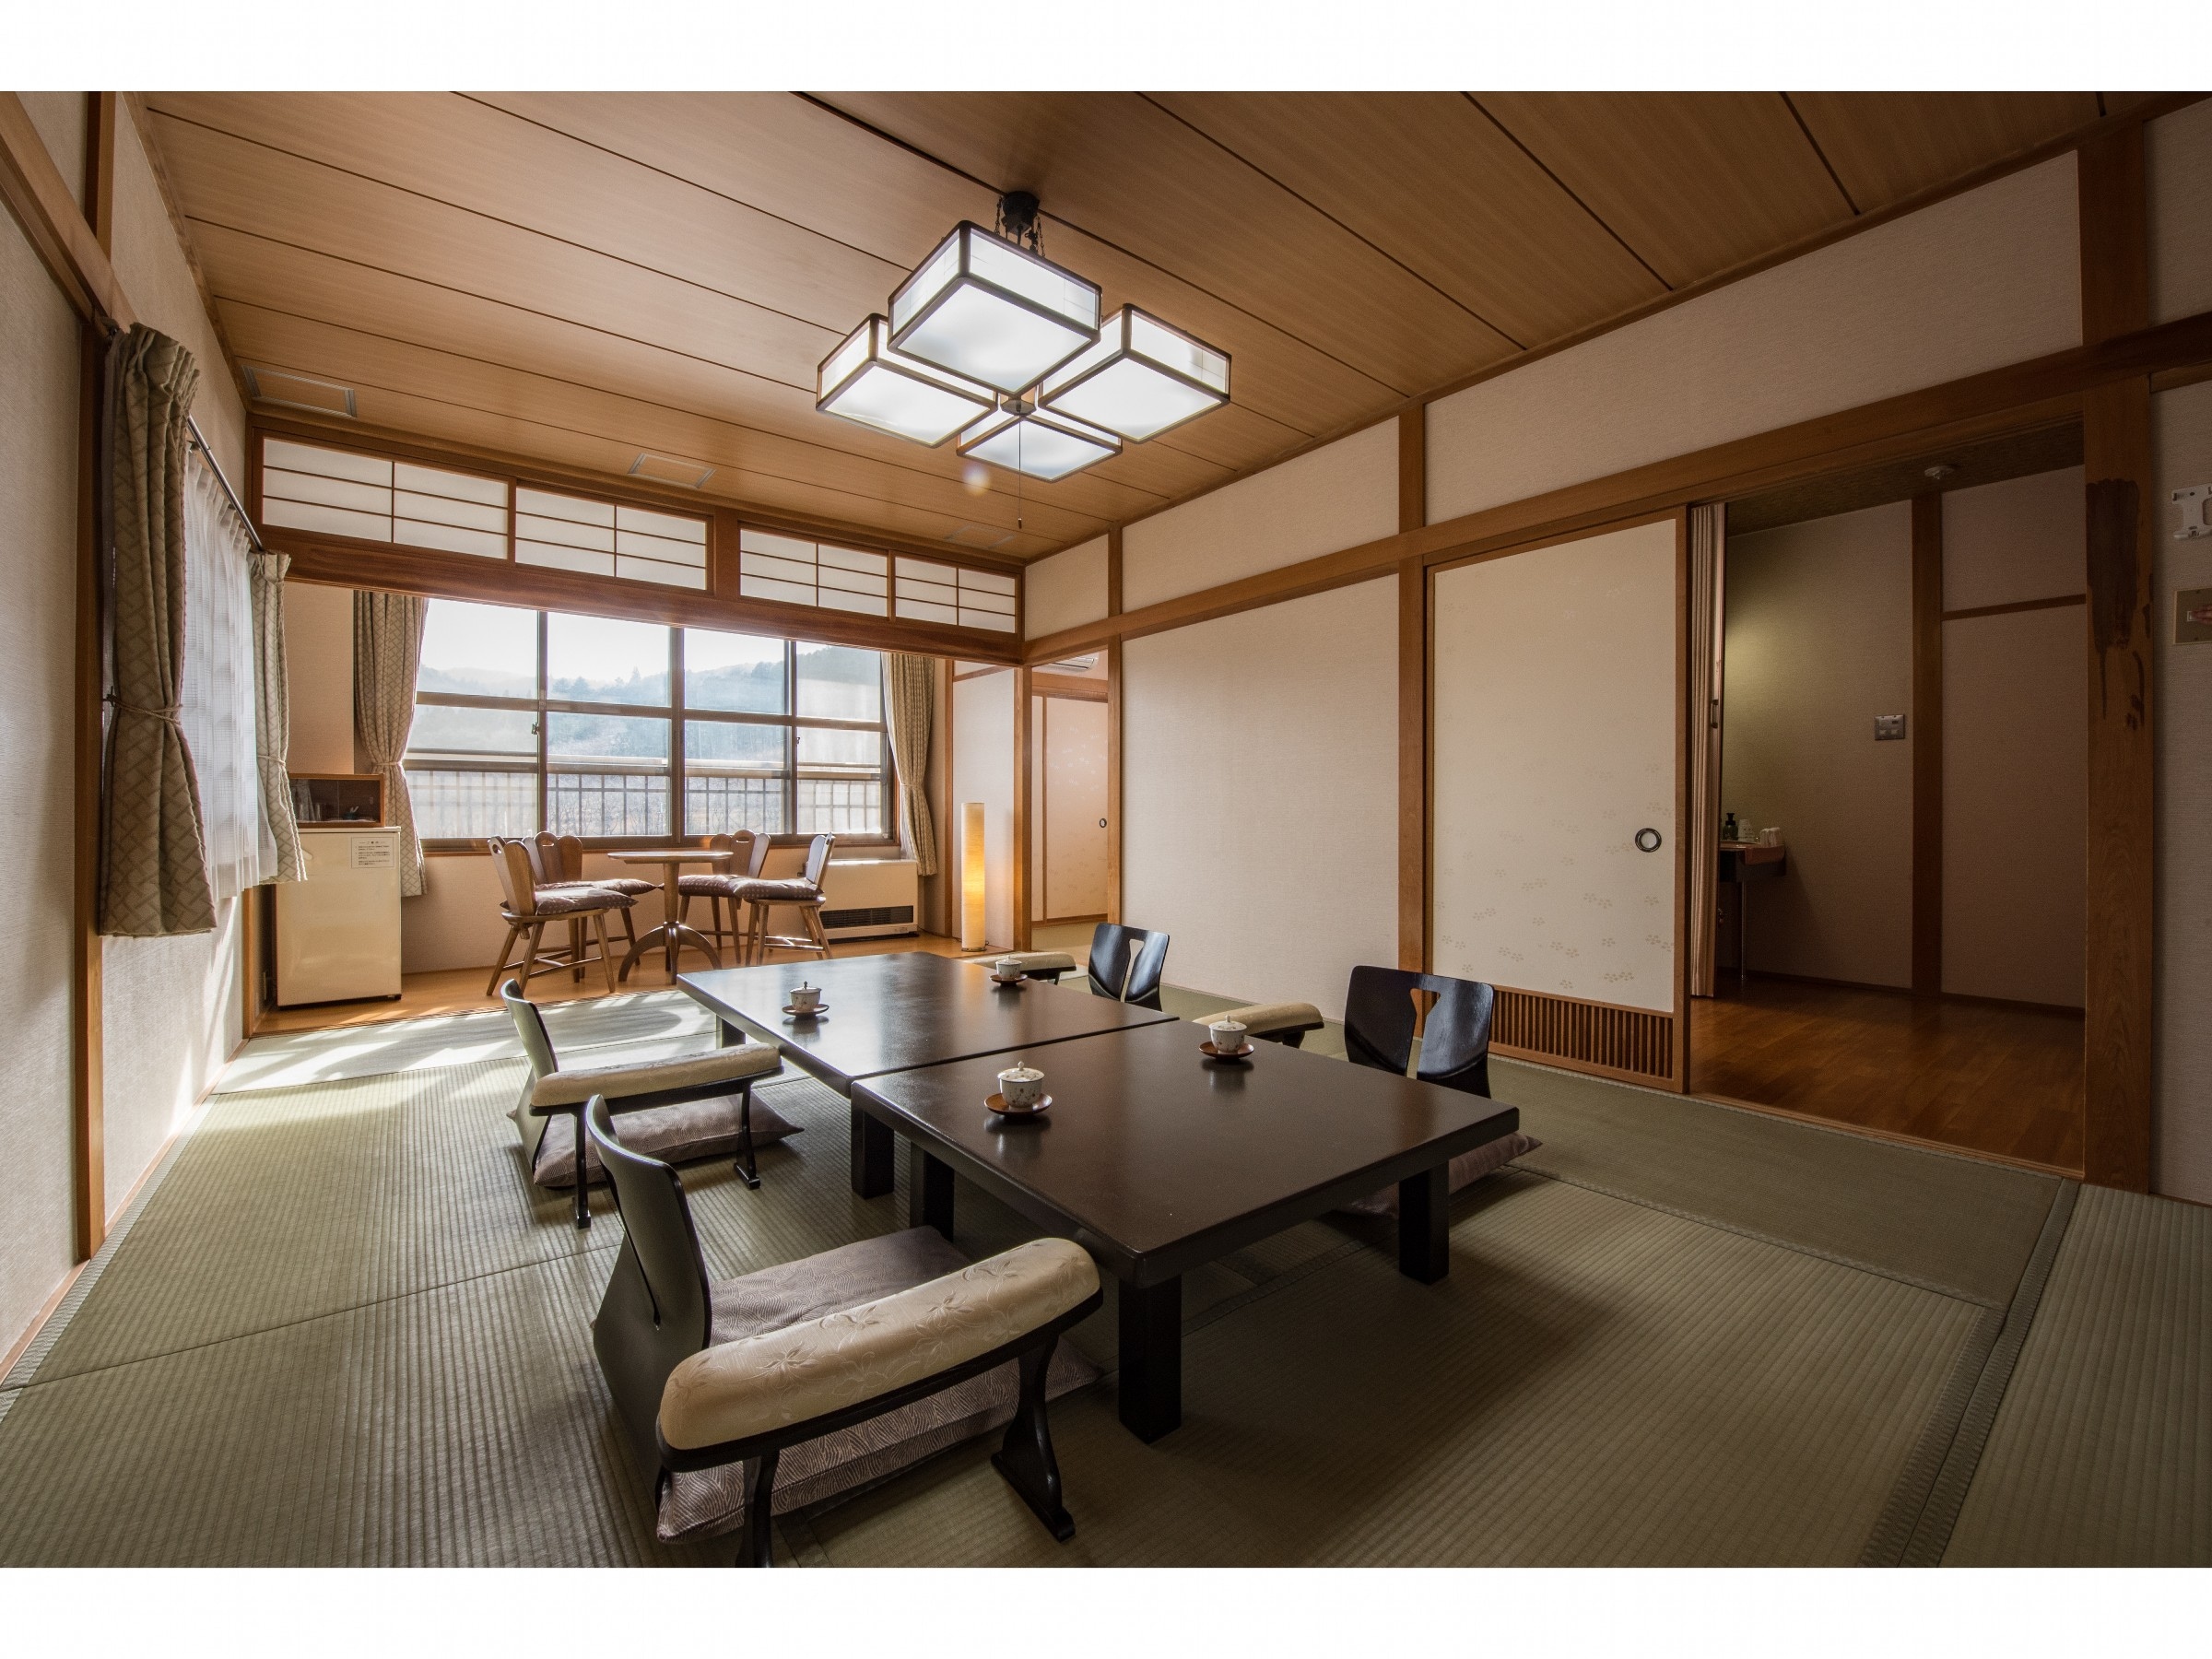 ห้องถัดไปมี 12 เสื่อทาทามิและ 8 เสื่อทาทามิ ในห้องสไตล์ญี่ปุ่น (มีอ่างอาบน้ำและห้องสุขา)